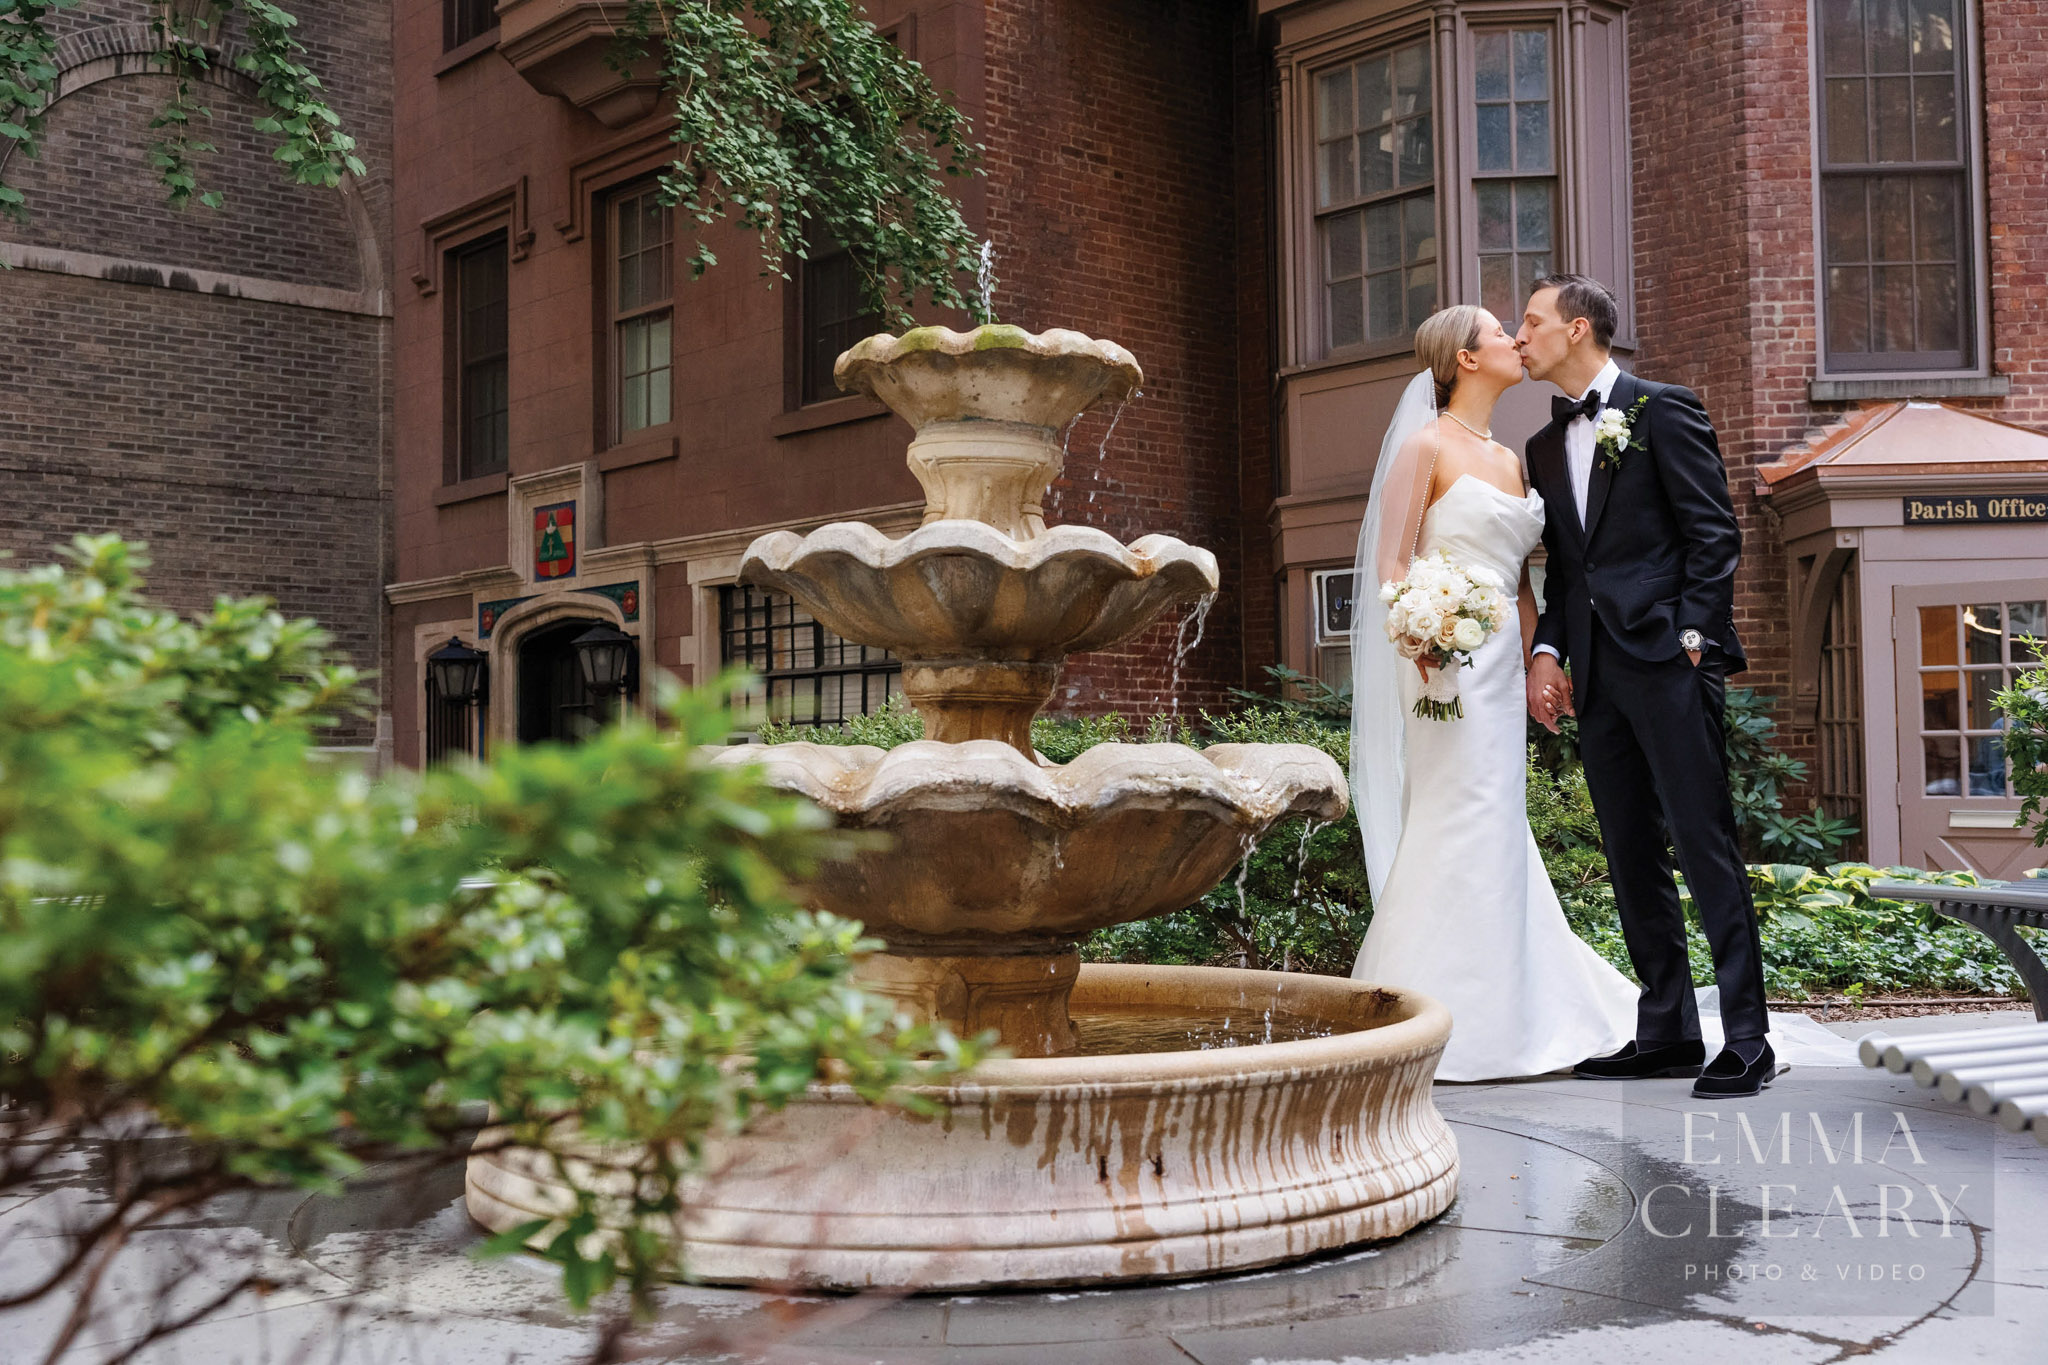 Wedding kiss near fountain